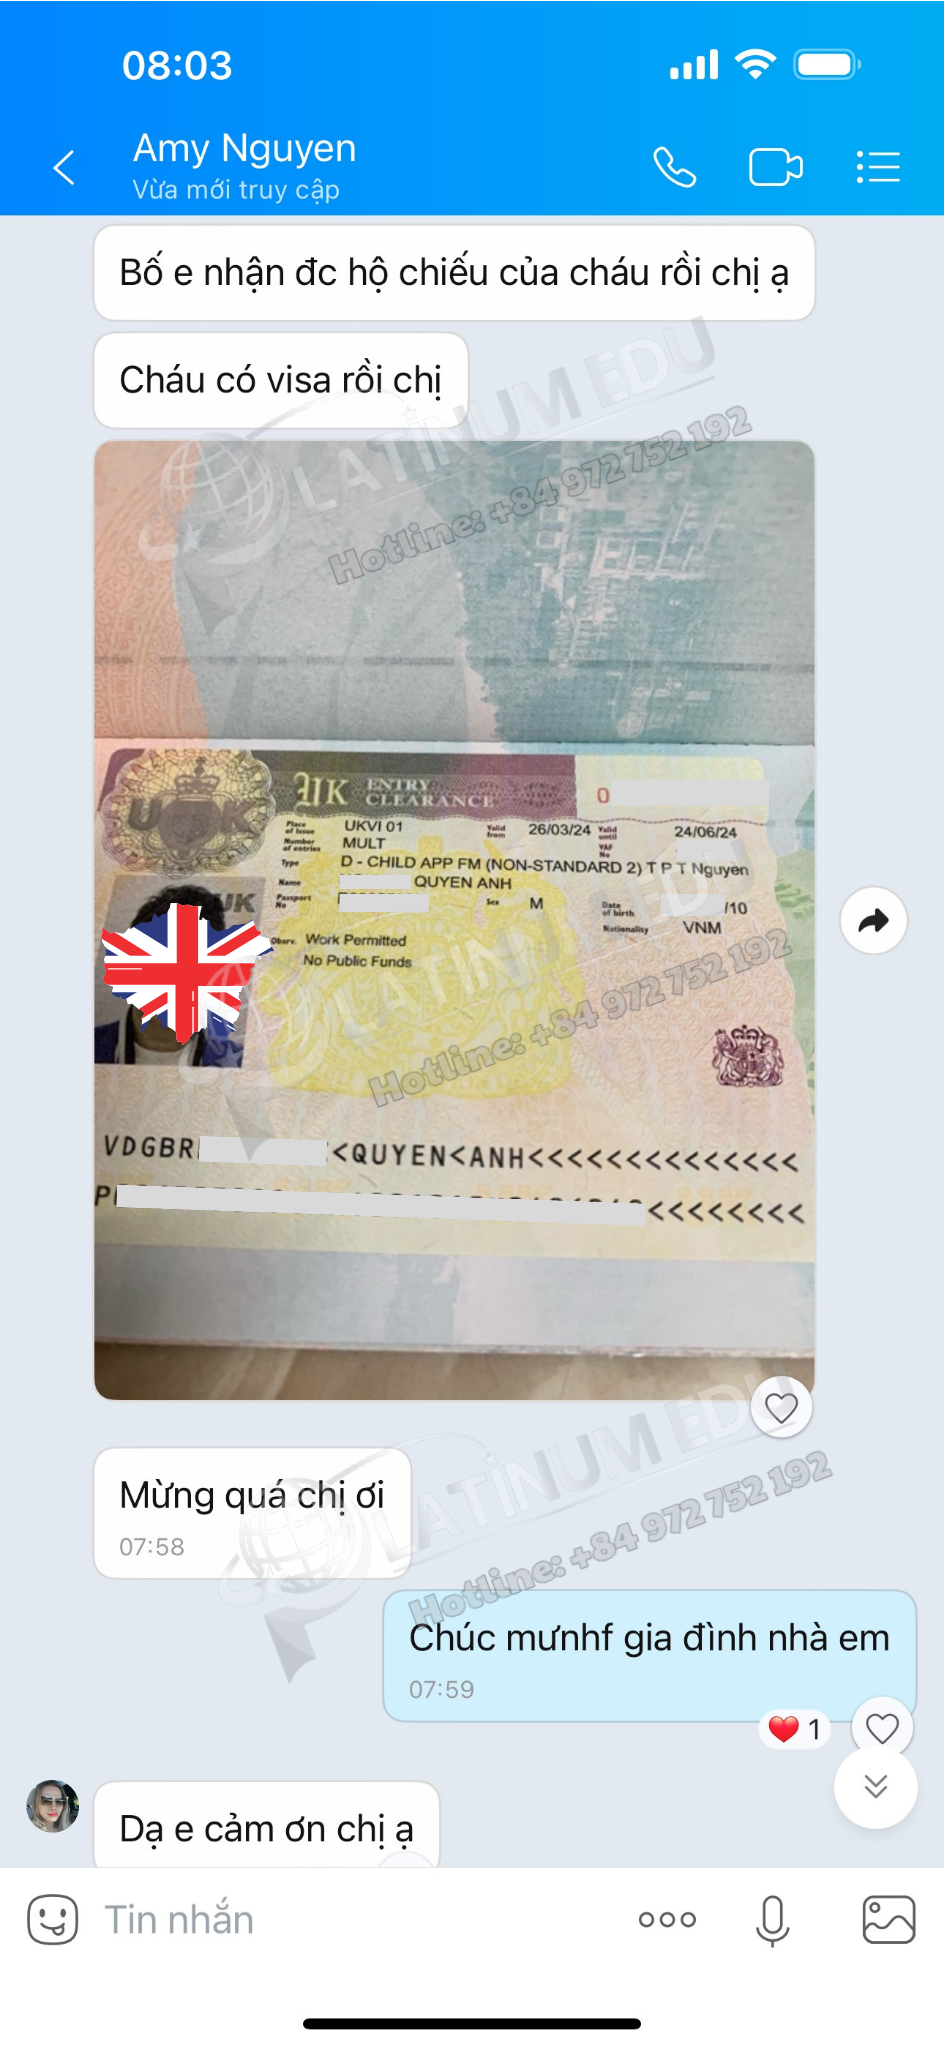 Sự vui mừng của Chị Thảo khi nhận được Visa định cư Anh Quốc cho con